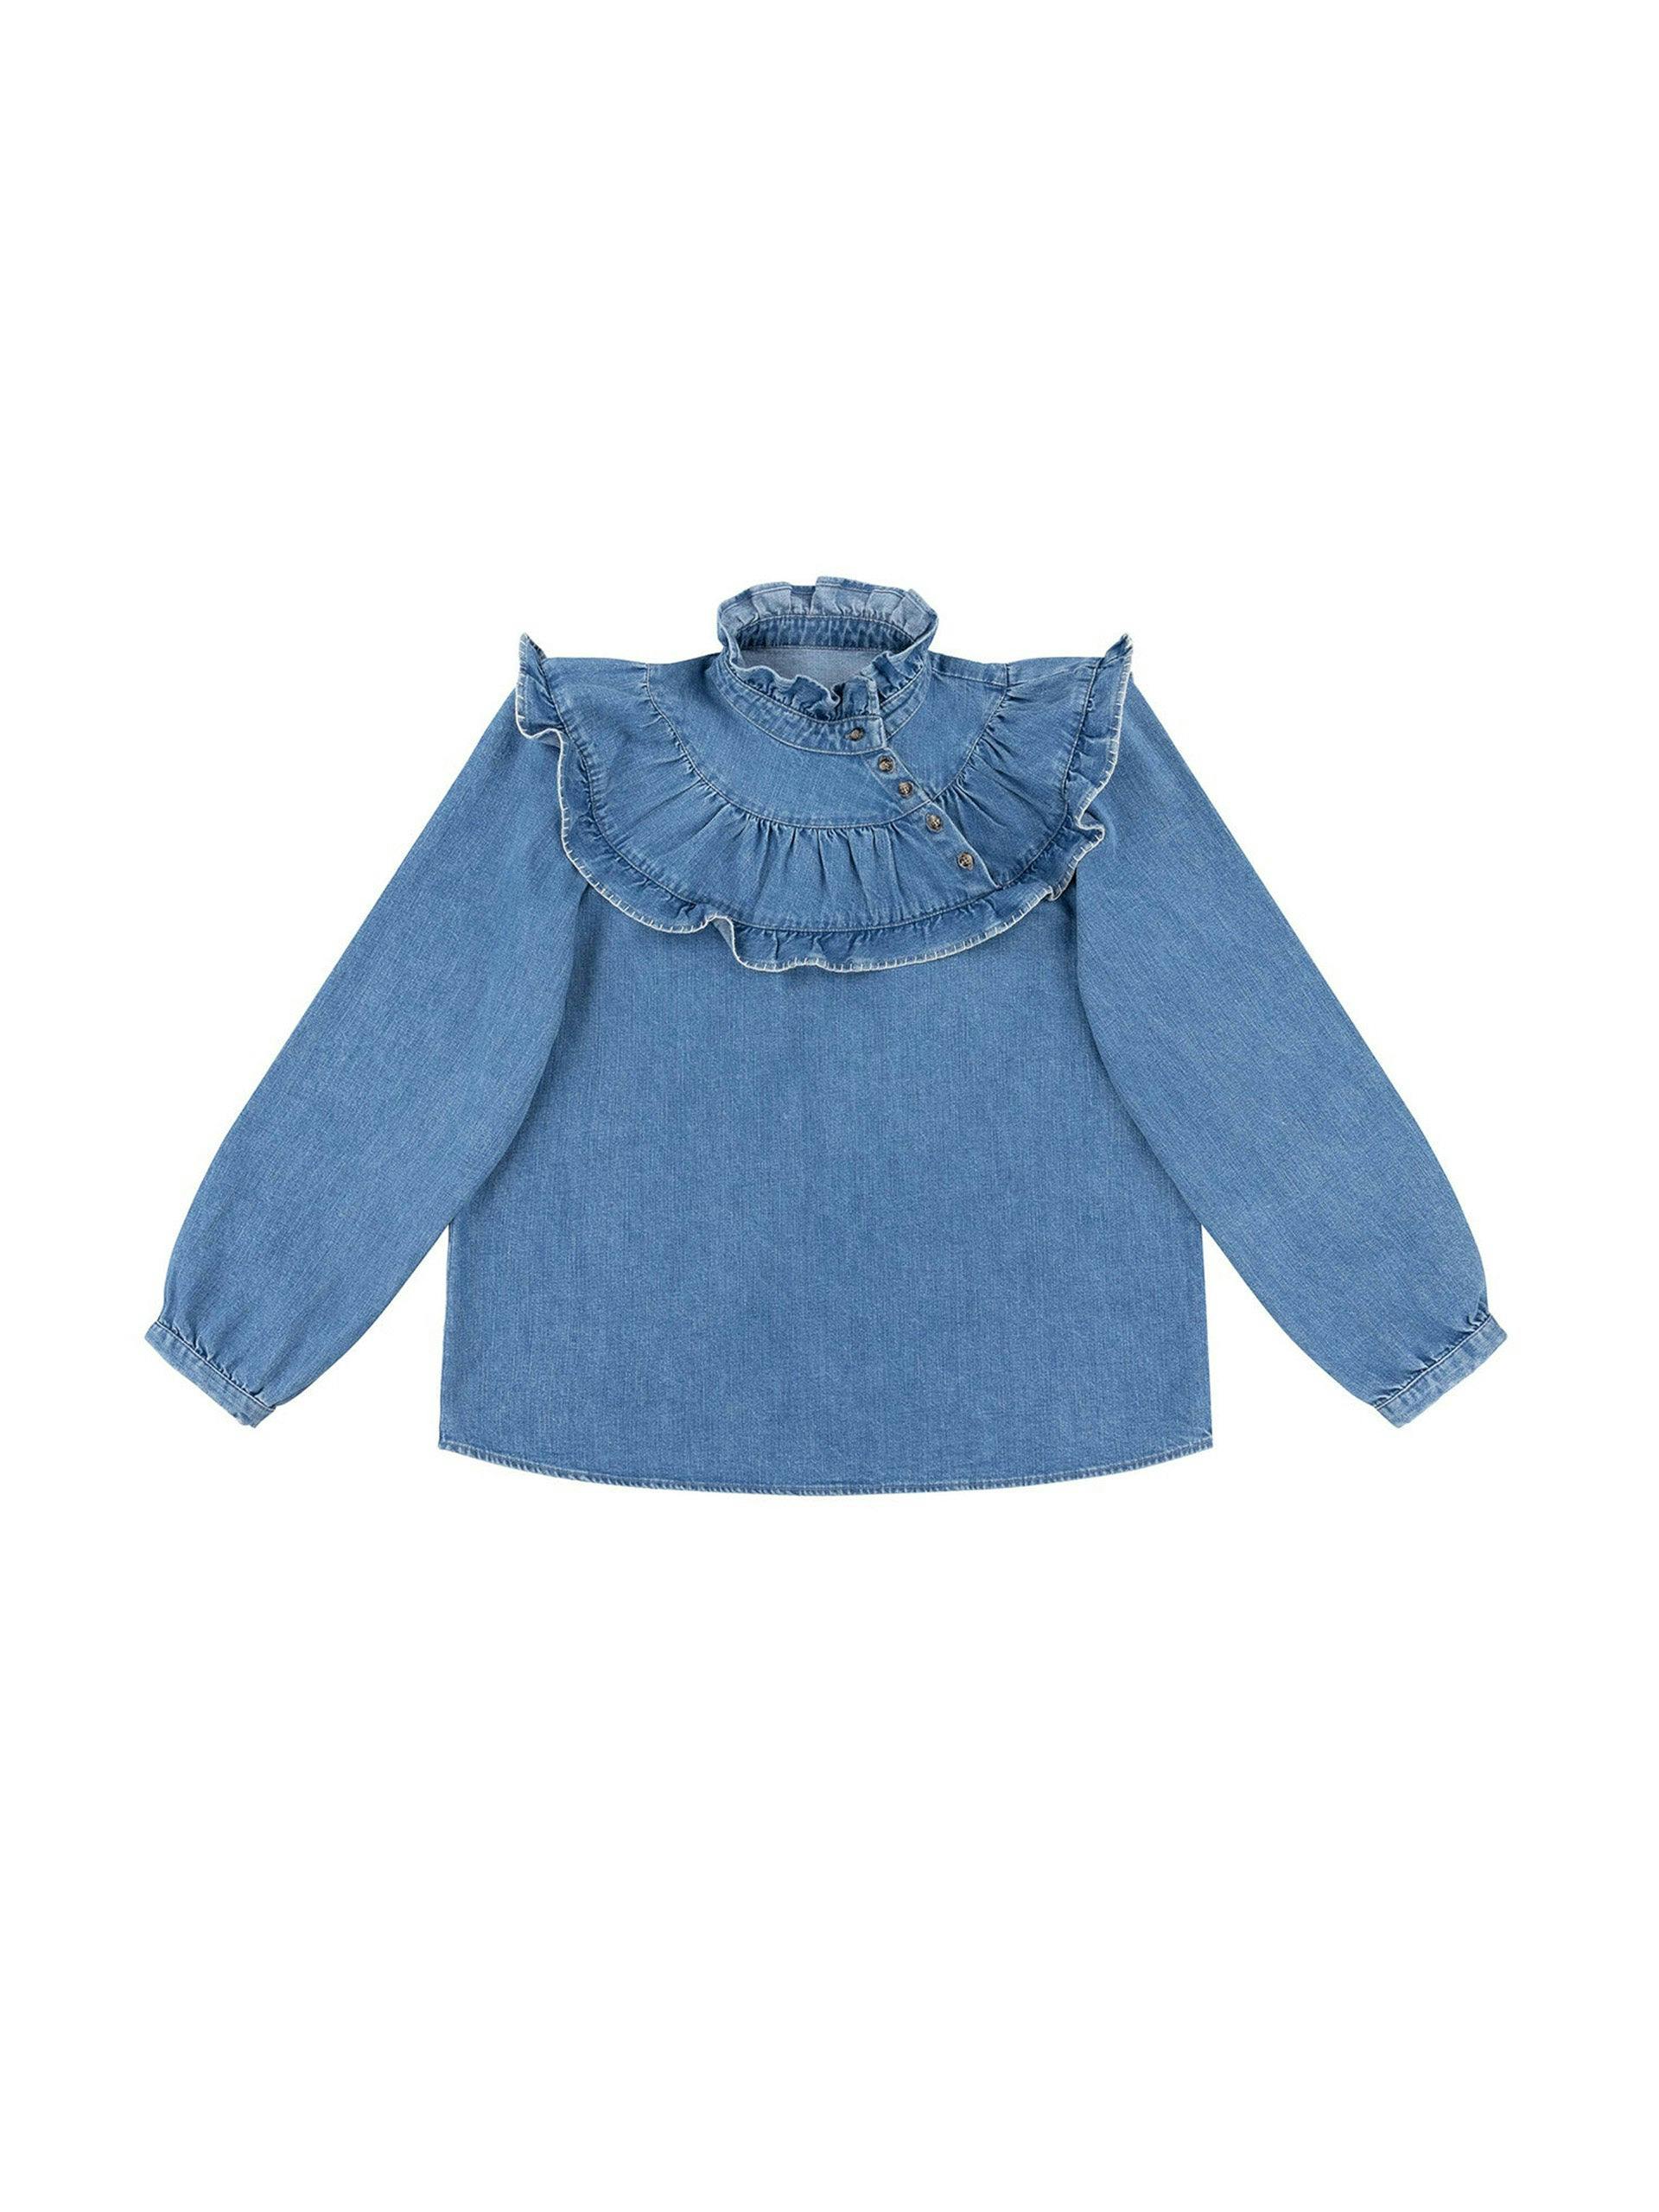 Washed indigo Victoria blouse